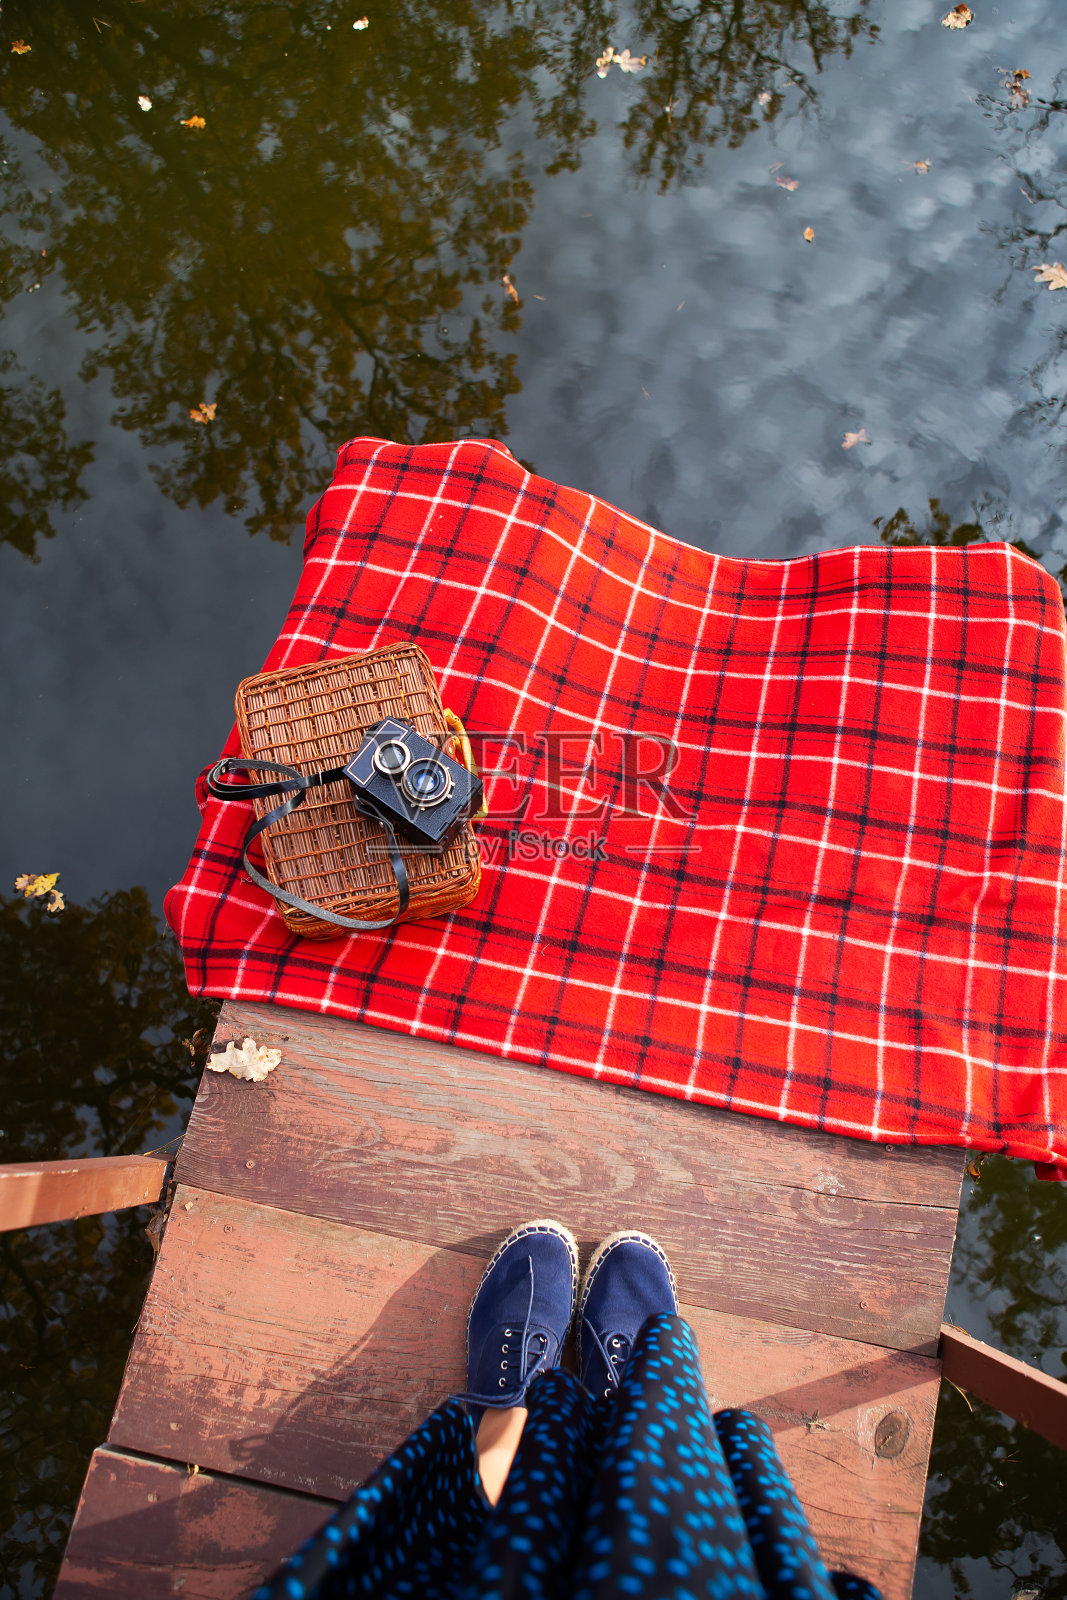 那架旧照相机放在红格子布上的手提箱上。湖边的木桥。照片里女孩的腿。照片摄影图片